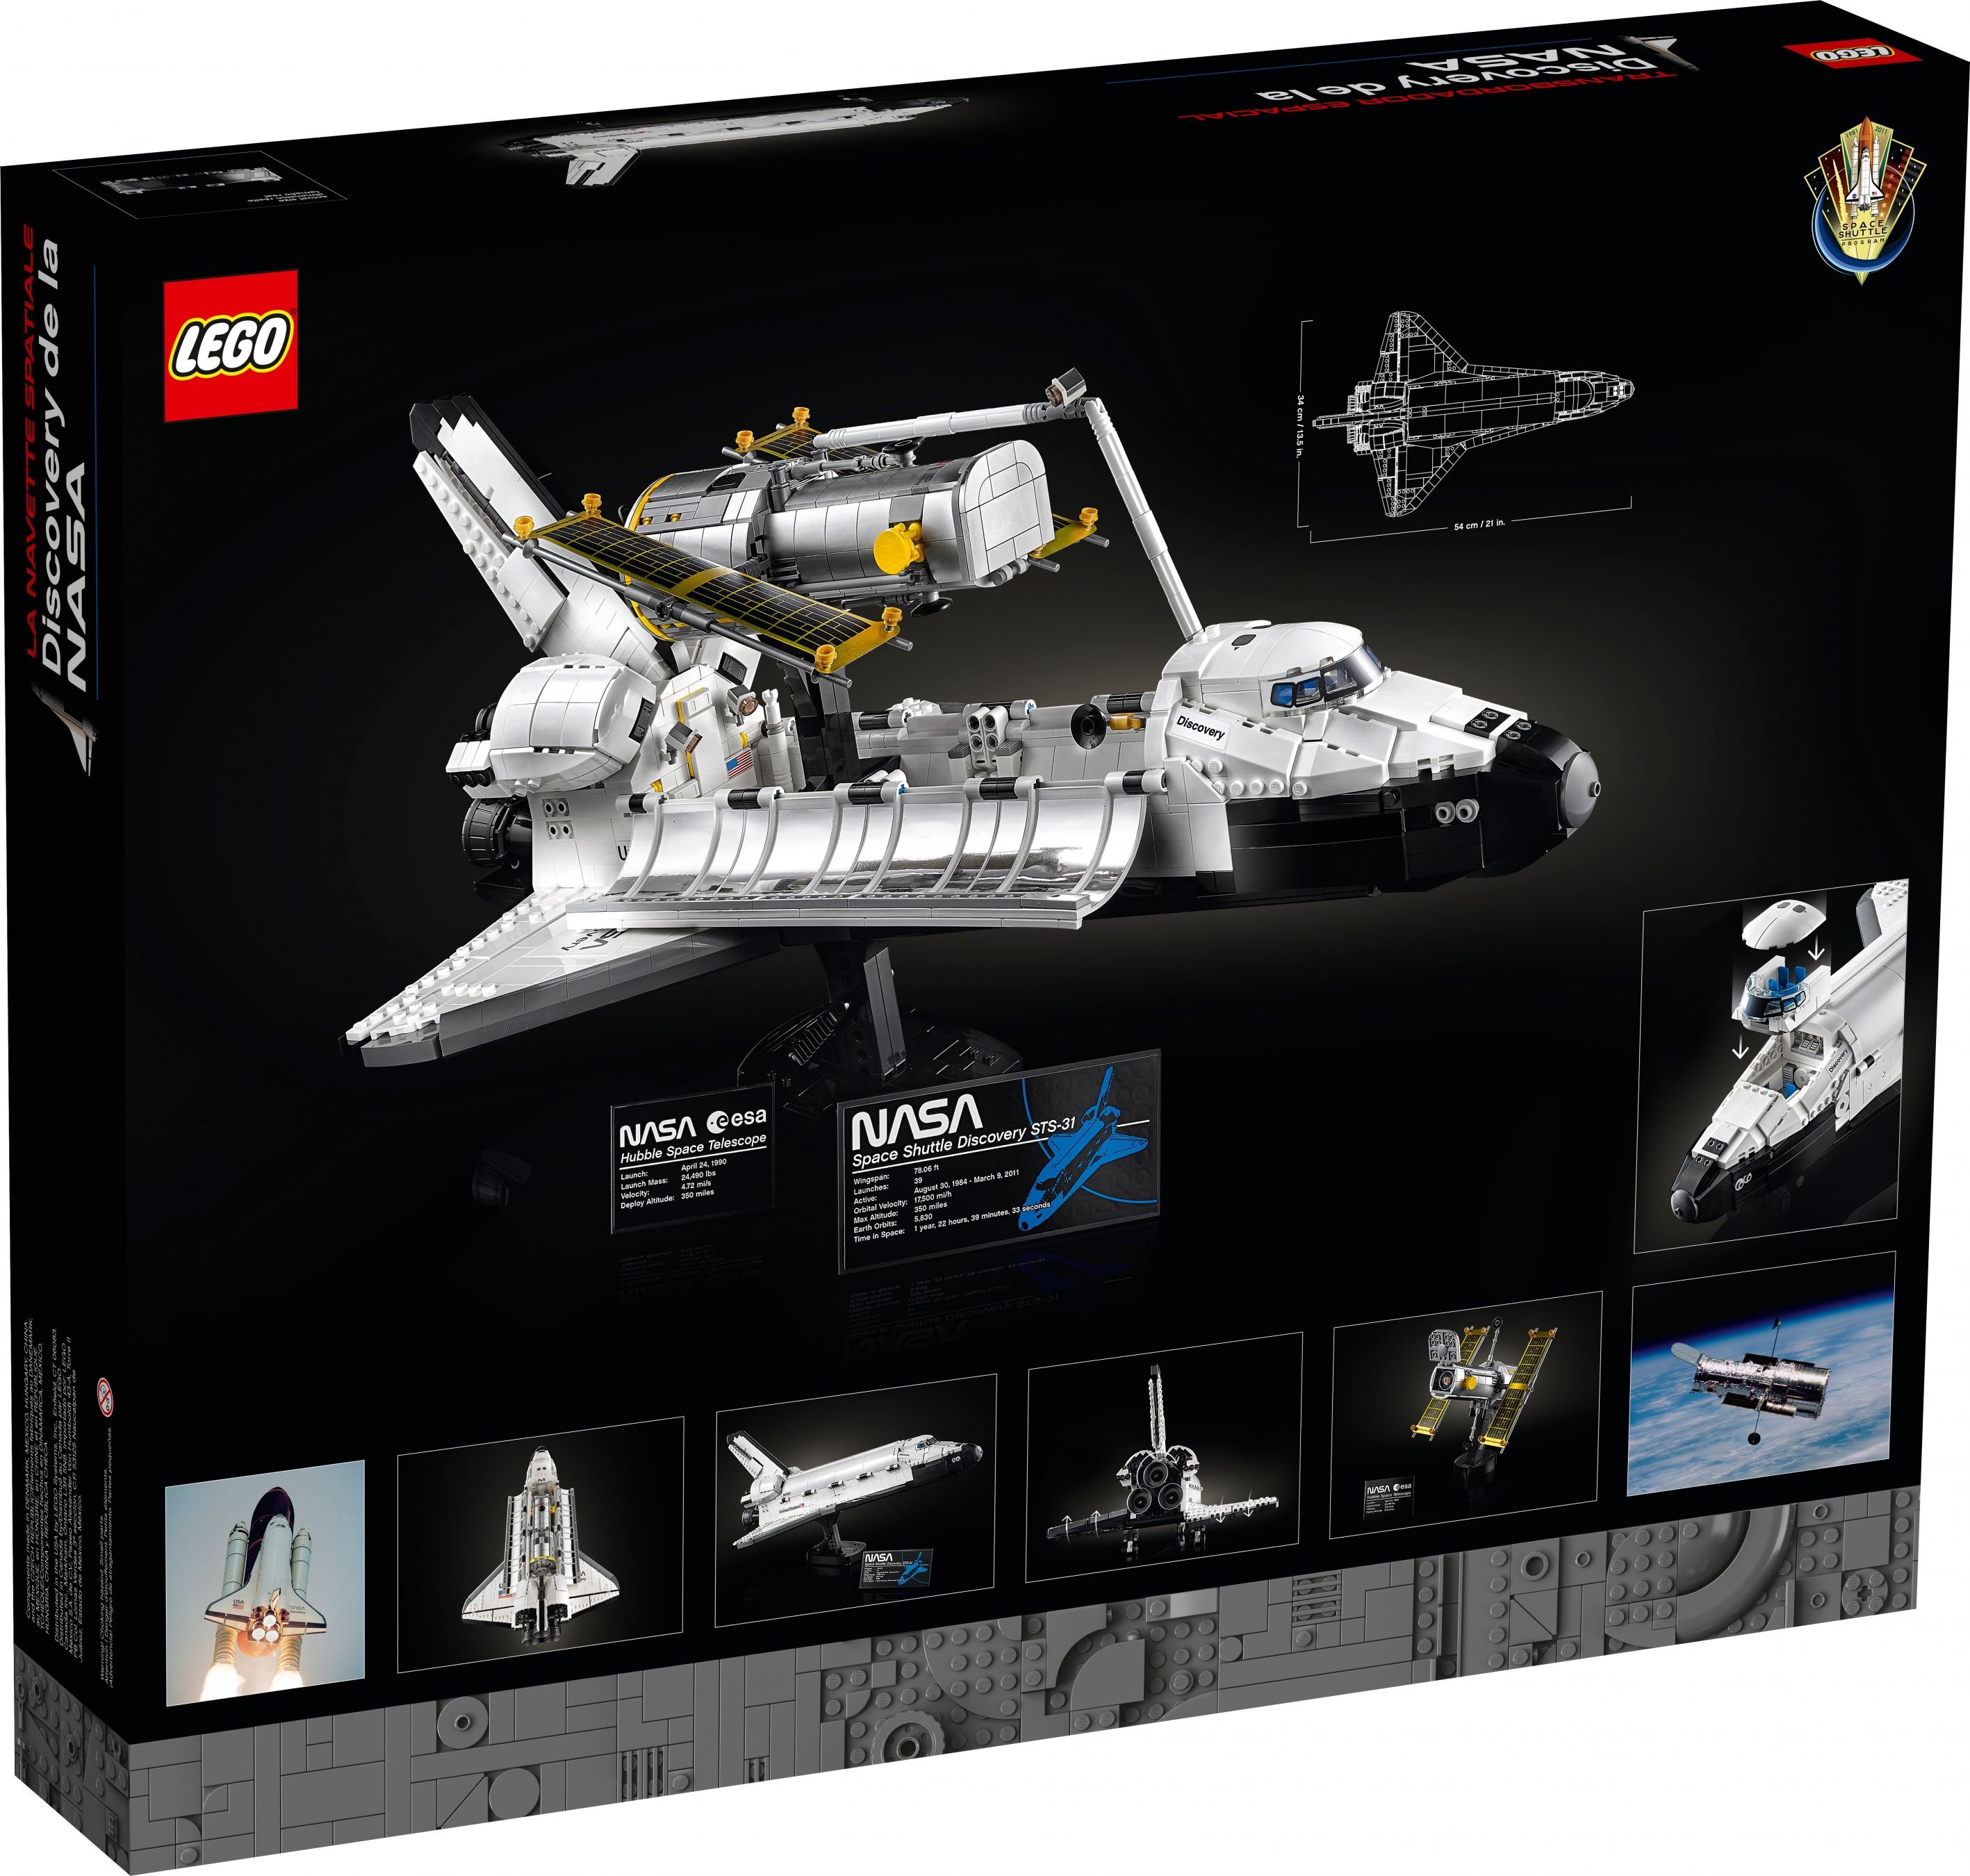 LEGO Advanced Models 10283 NASA-Spaceshuttle „Discovery“ LEGO_10283_alt14.jpg